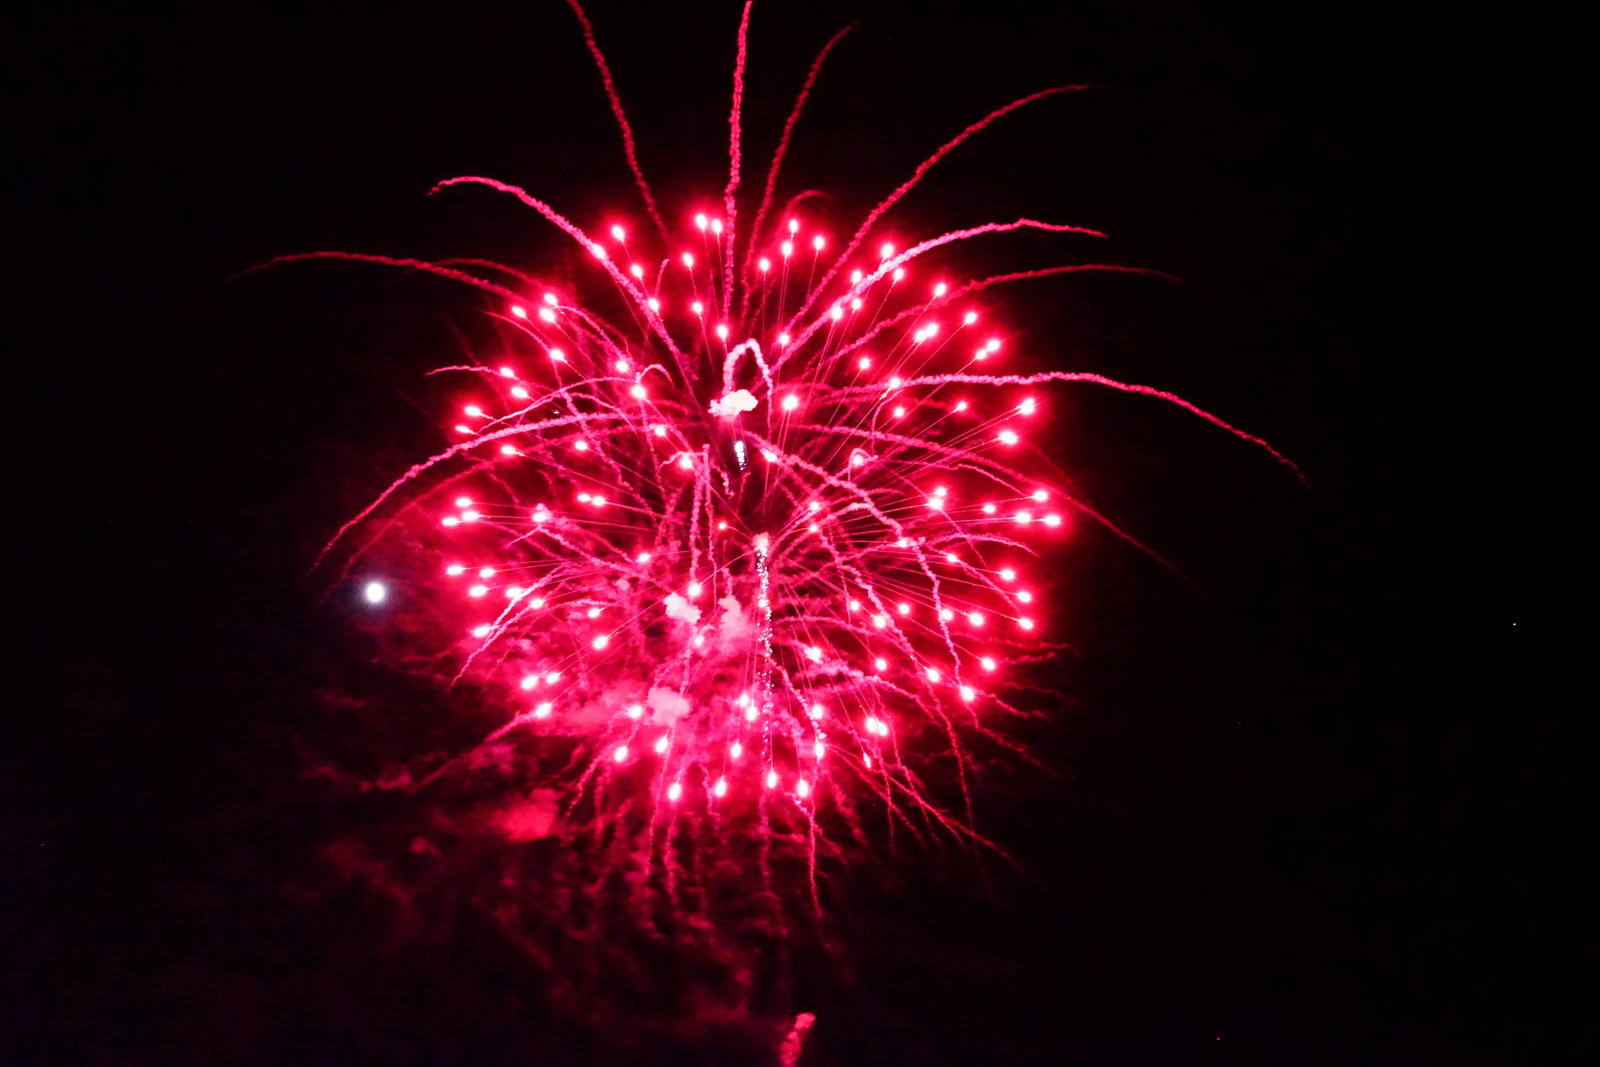 Anura Guruge Sony A7 II Wolfeboro fireworks New Hampshire